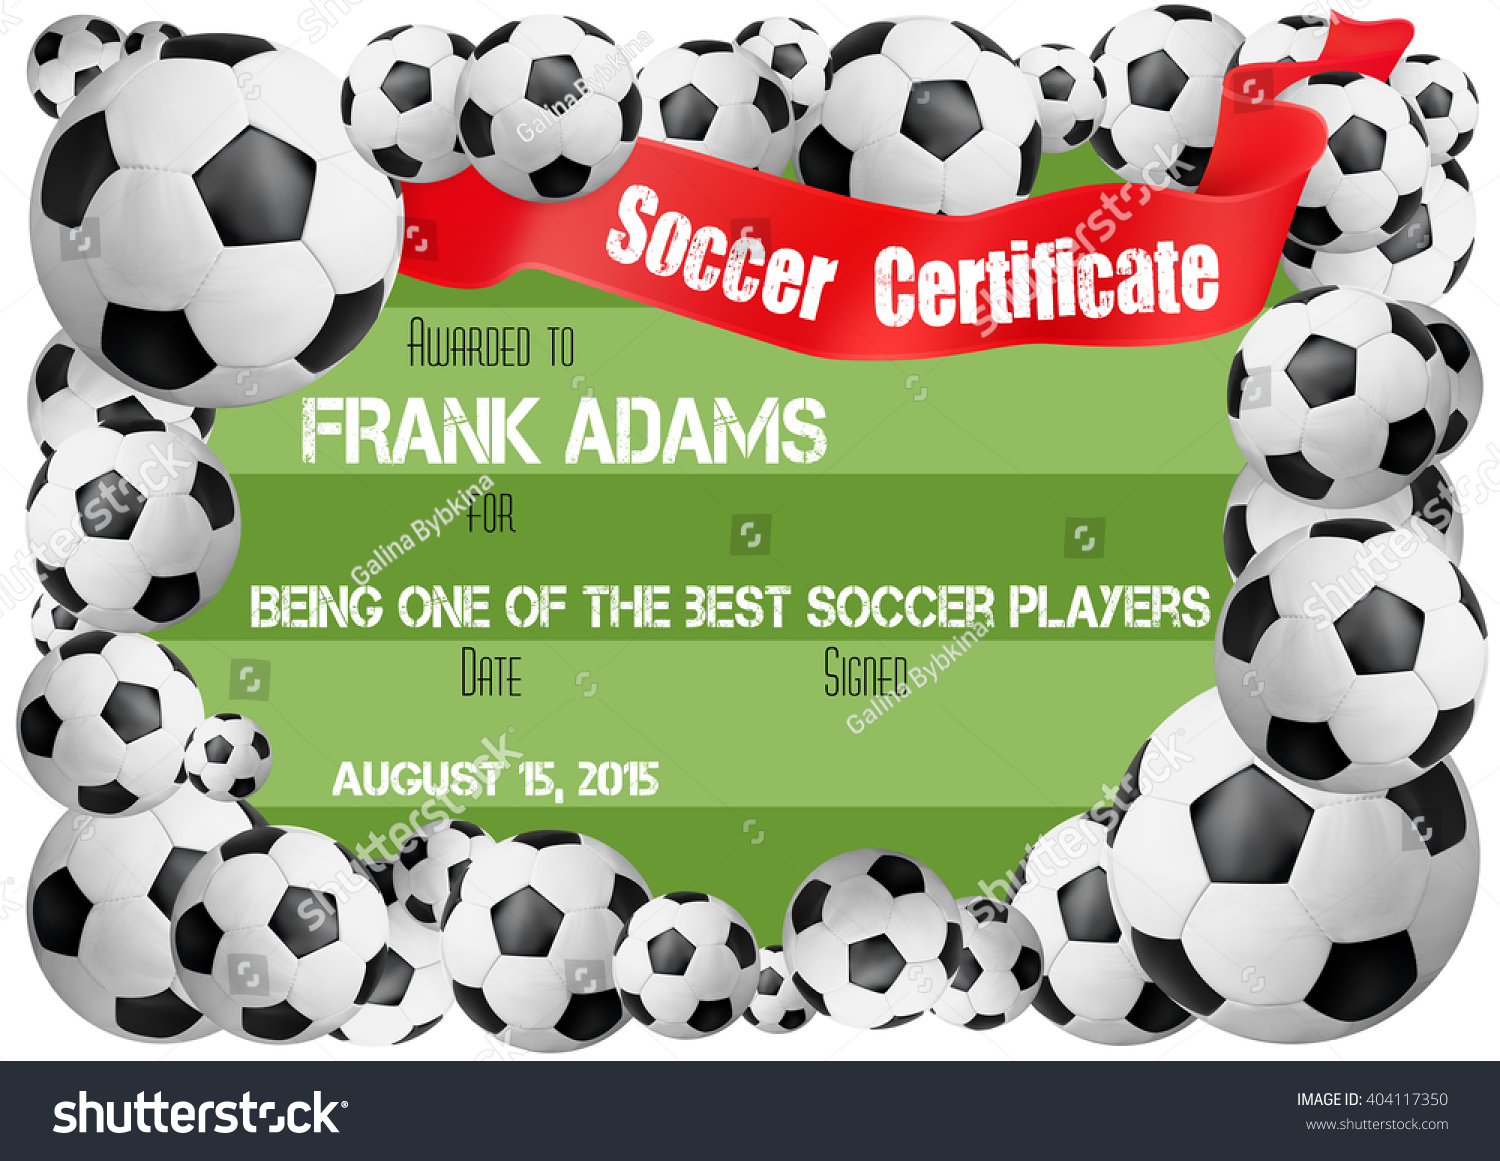 Soccer Certificate Template Football Ball Icons Stock Vector For Soccer Certificate Template